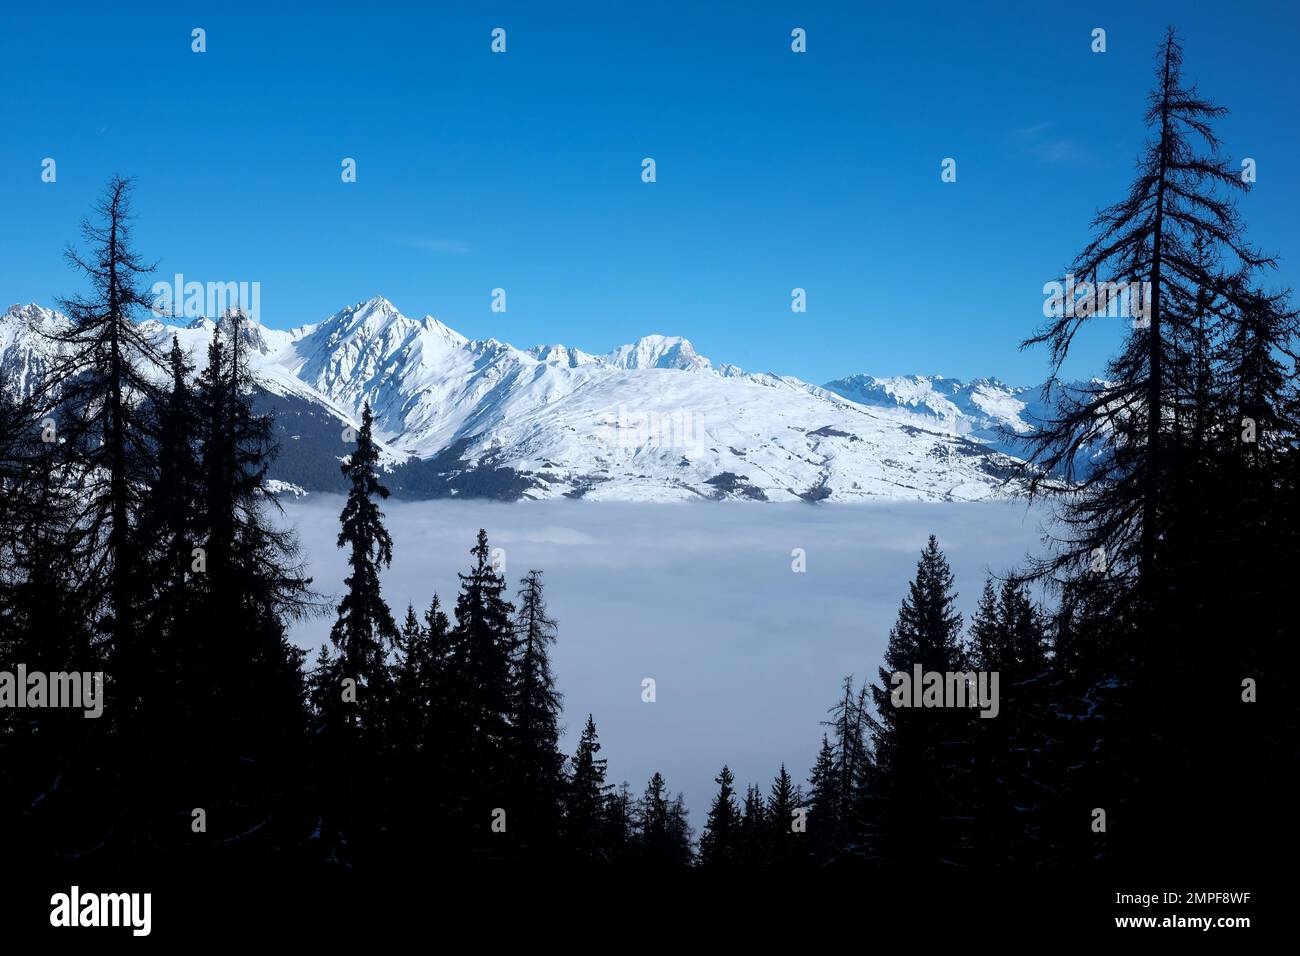 Michael Bunel / le Pictorium - Sci nelle Alpi - 5/1/2016 - Savoia / Francia / la plagne - mare di nuvole illustrazione di fronte al monte bianco. Foto Stock